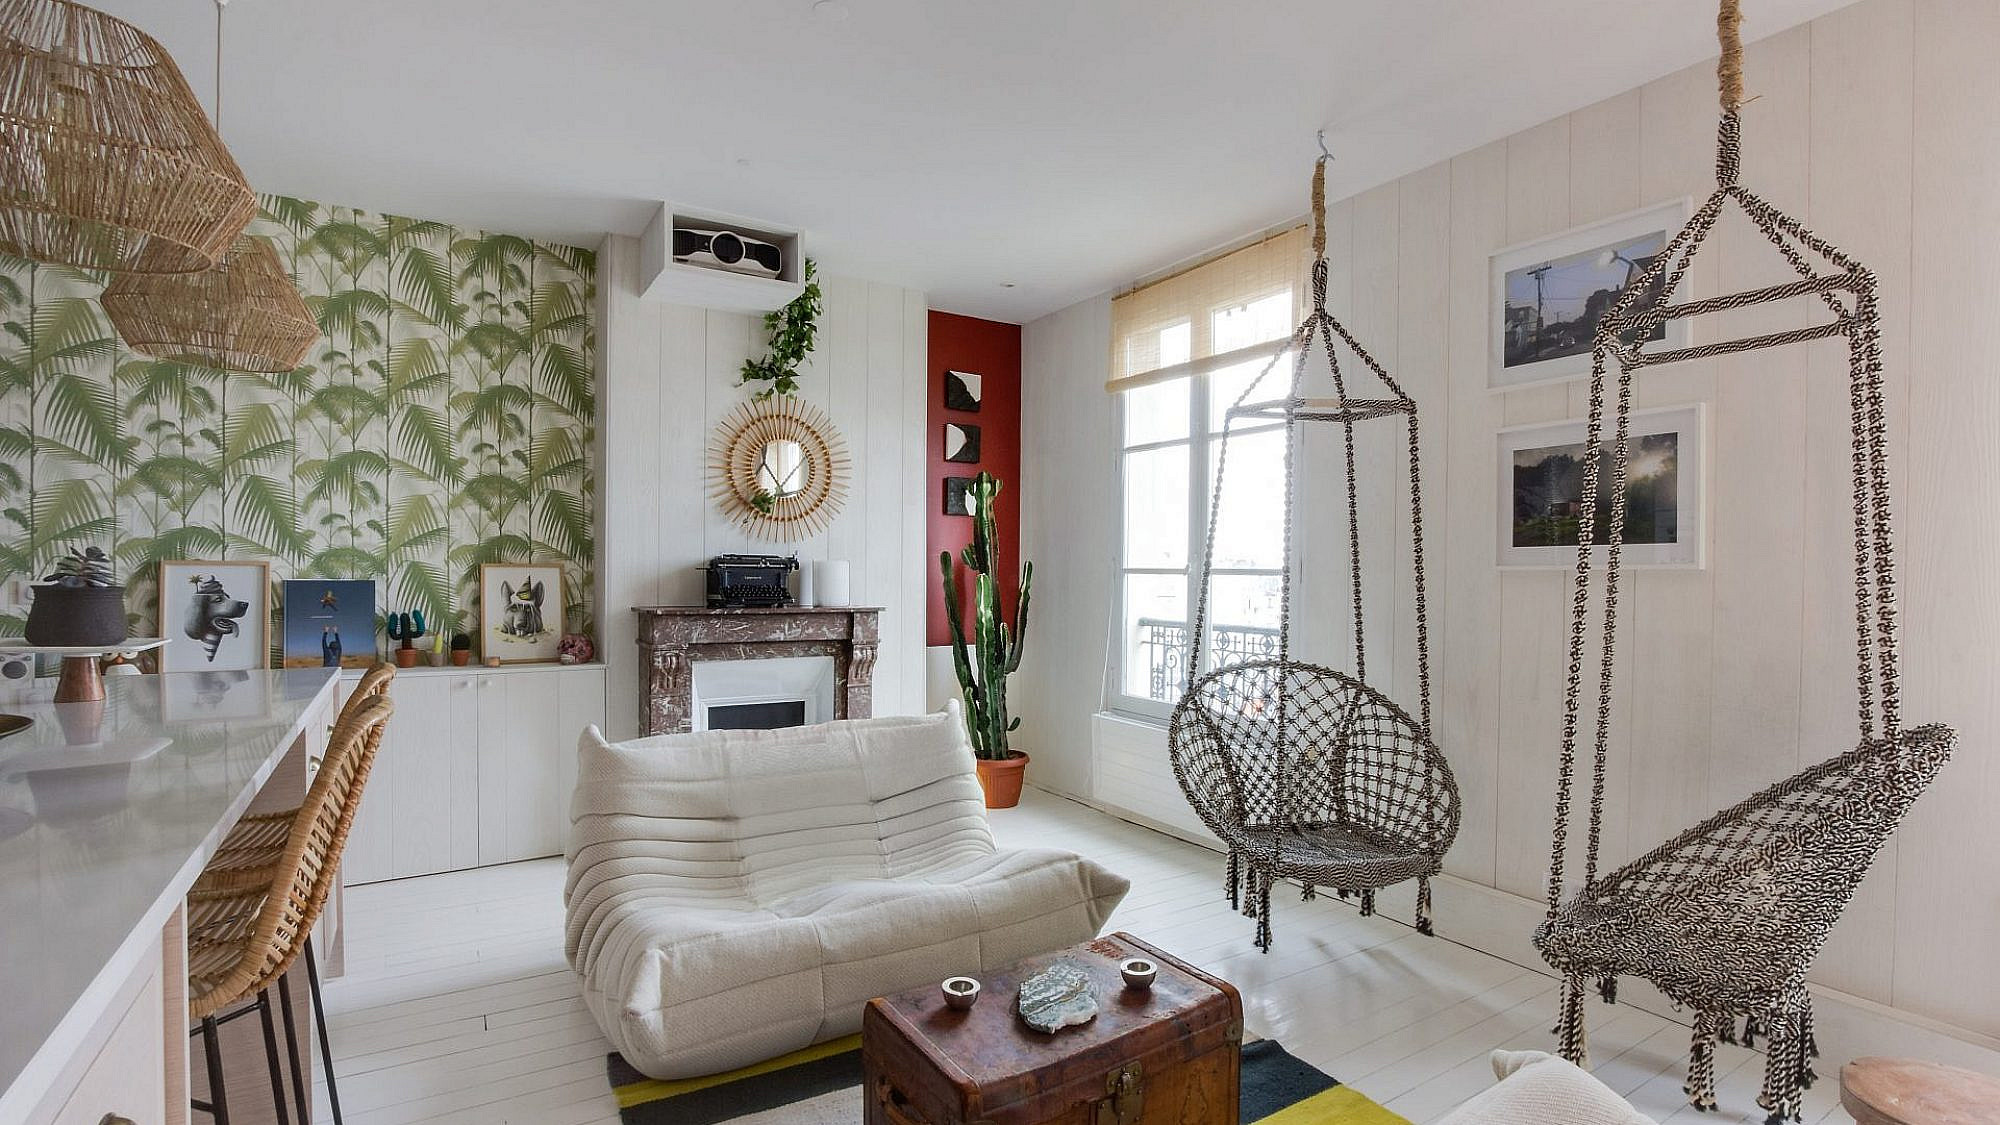 דירה בפריז | עיצוב: Baldini Architecture, צילום: Adelaide Klarwein